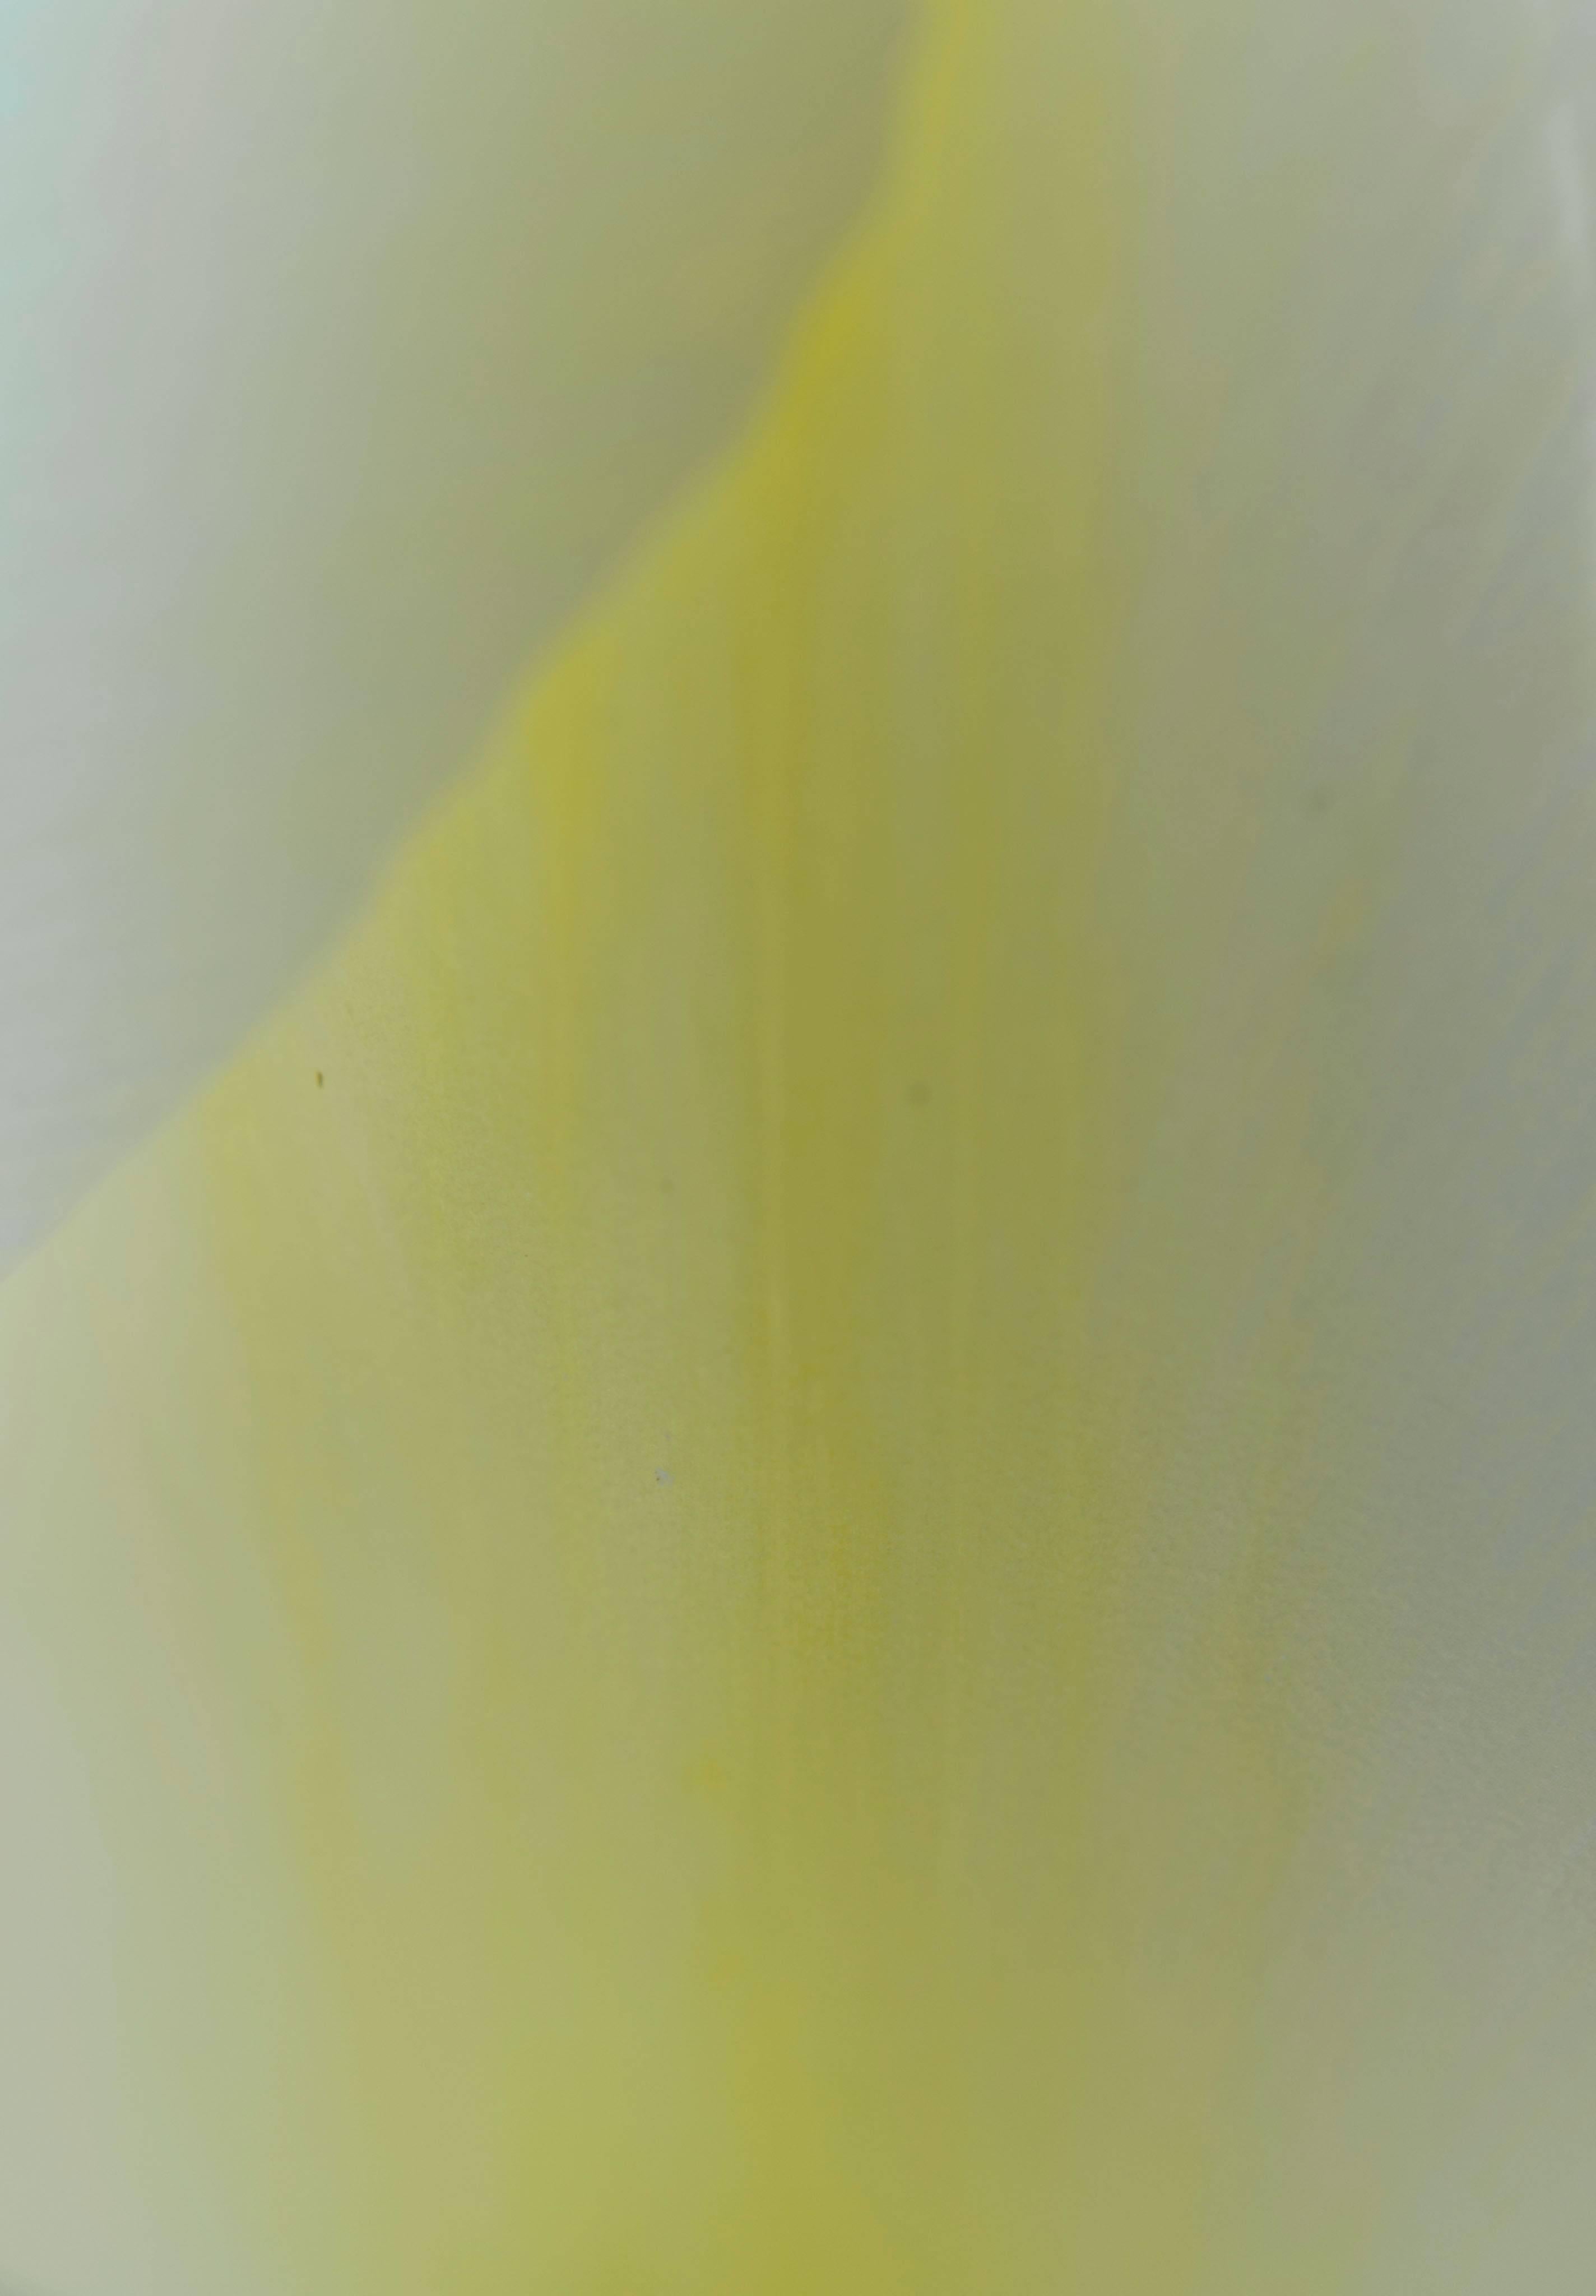 Gaétan Caron Abstract Photograph - "Yellow & White" Mendocino, CA 